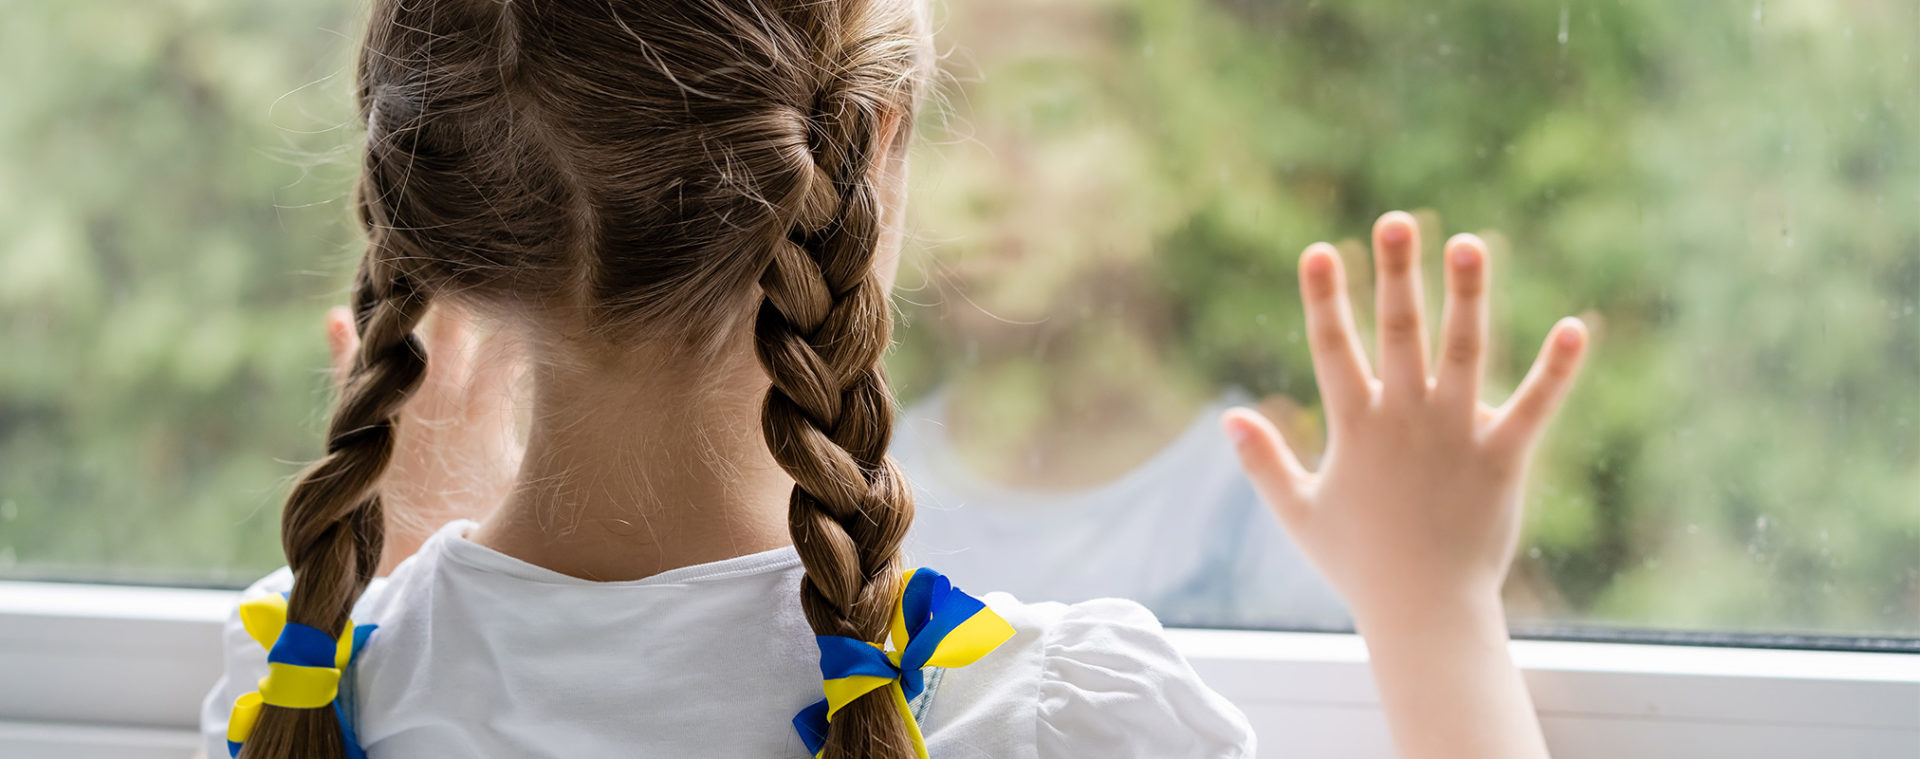 Міжнародний кримінальний суд кваліфікував незаконну депортацією українських дітей в Росію як воєнний злочин